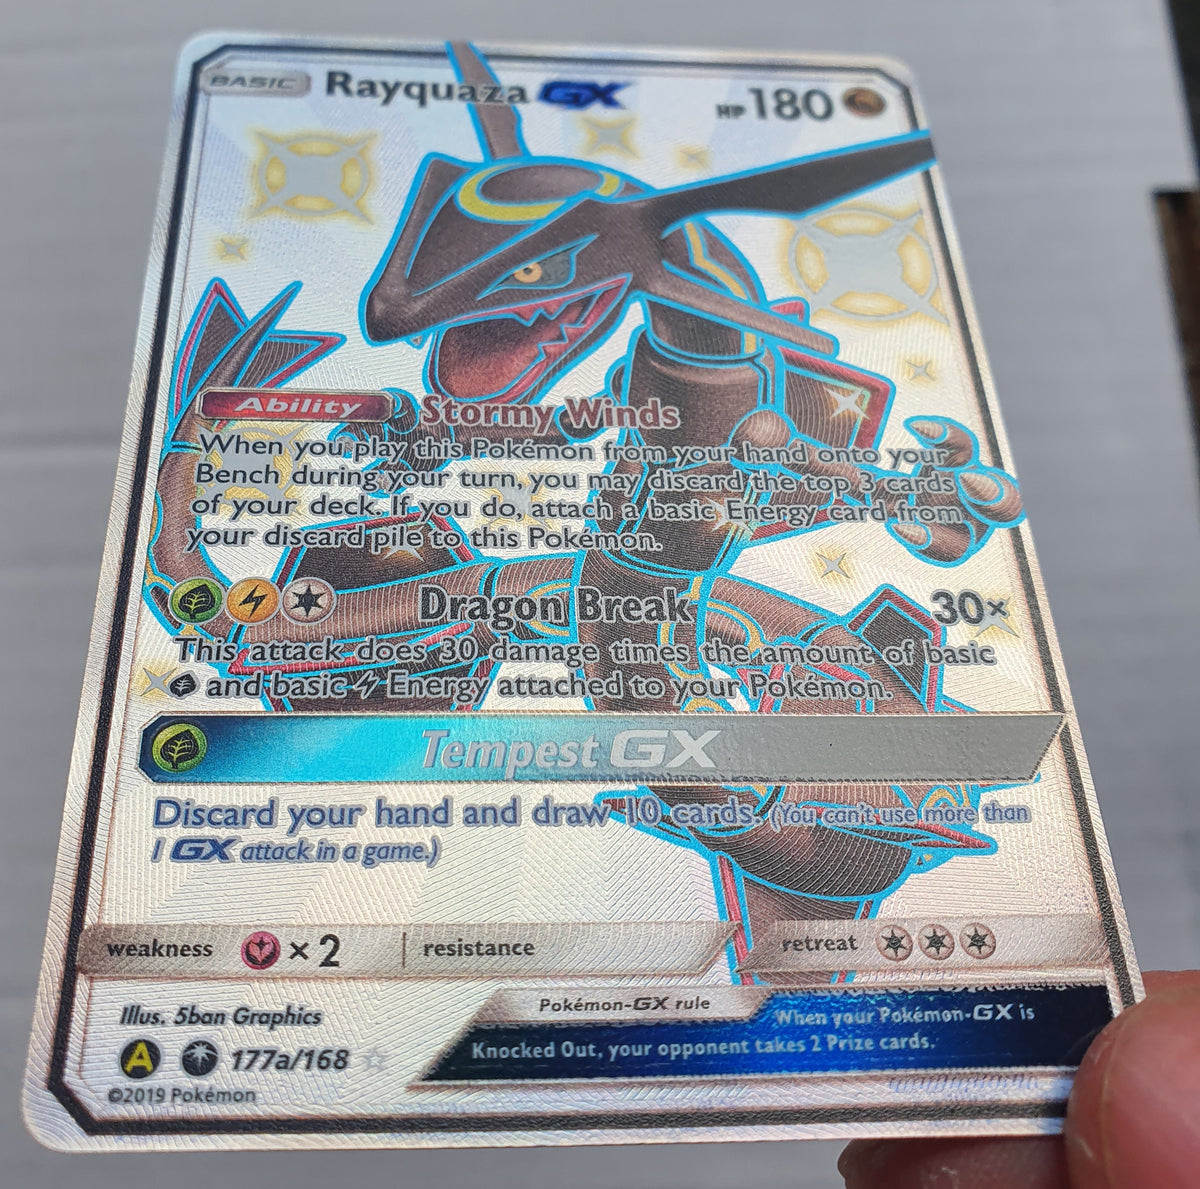 Rayquaza GX 177a/168 Ultra Rare Shiny Pokemon Card Hidden Fates Pokemon TCG  NM